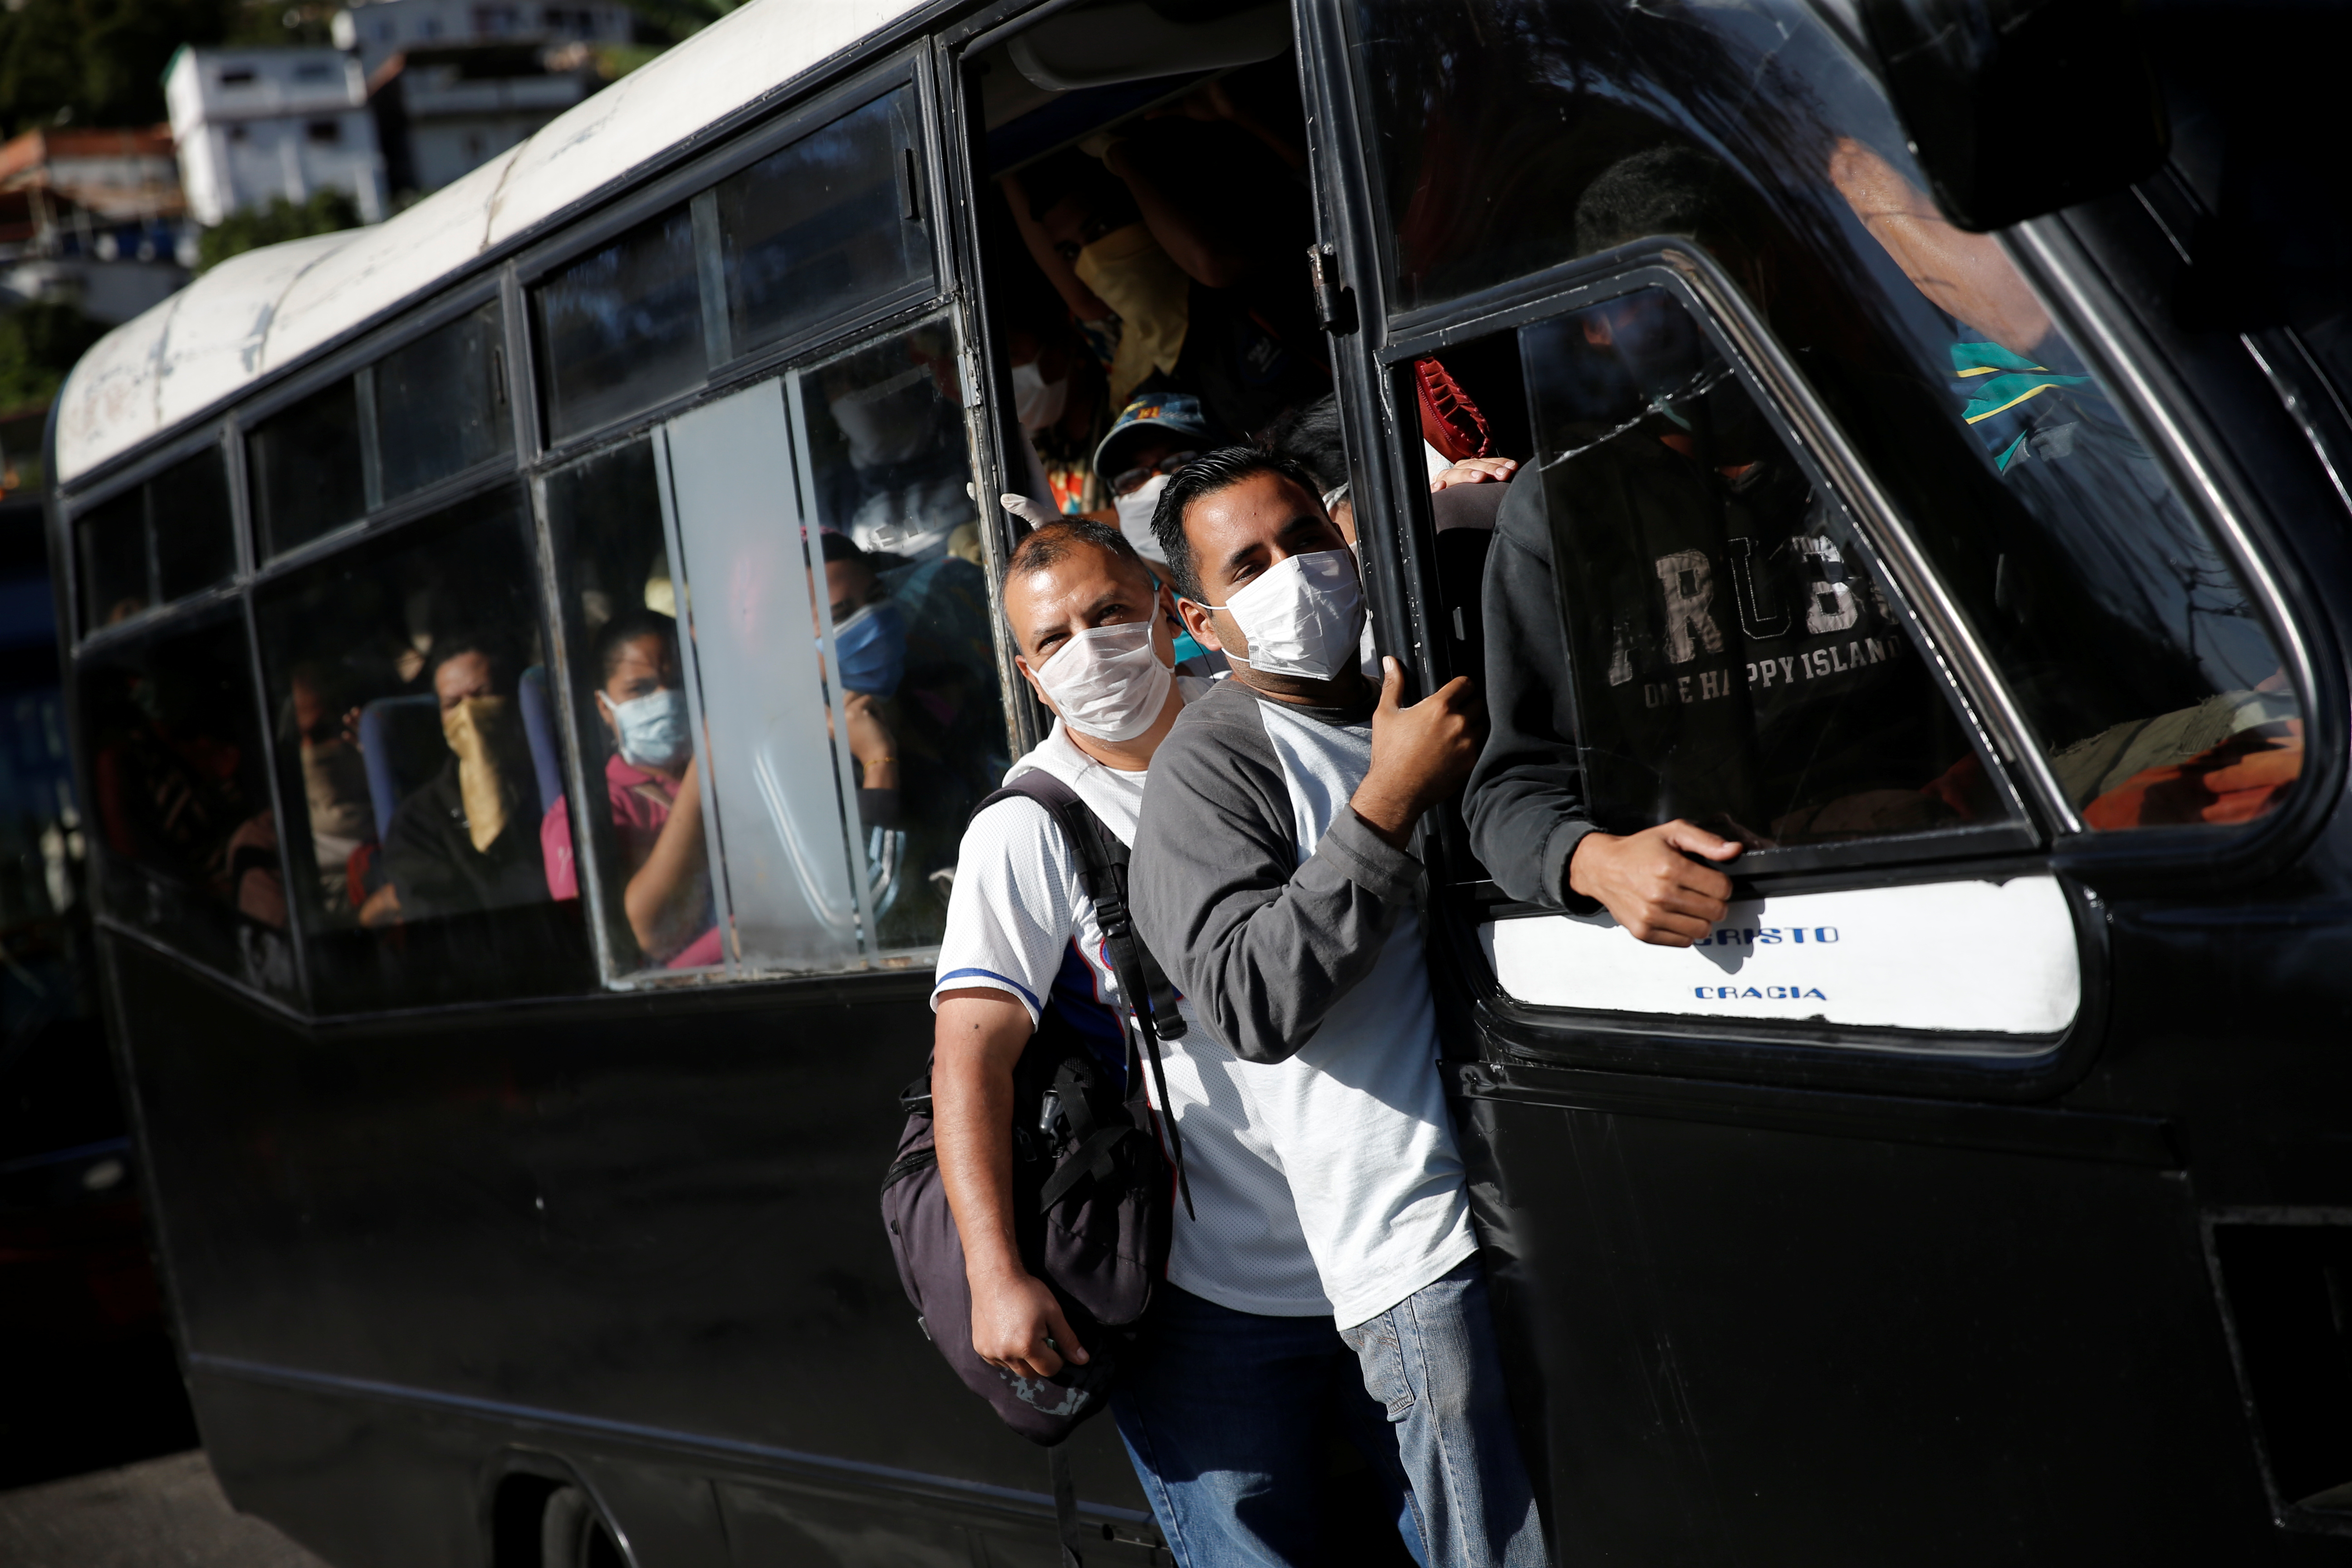 El salario mínimo del venezolano solo alcanza para pagar el pasaje de transporte urbano